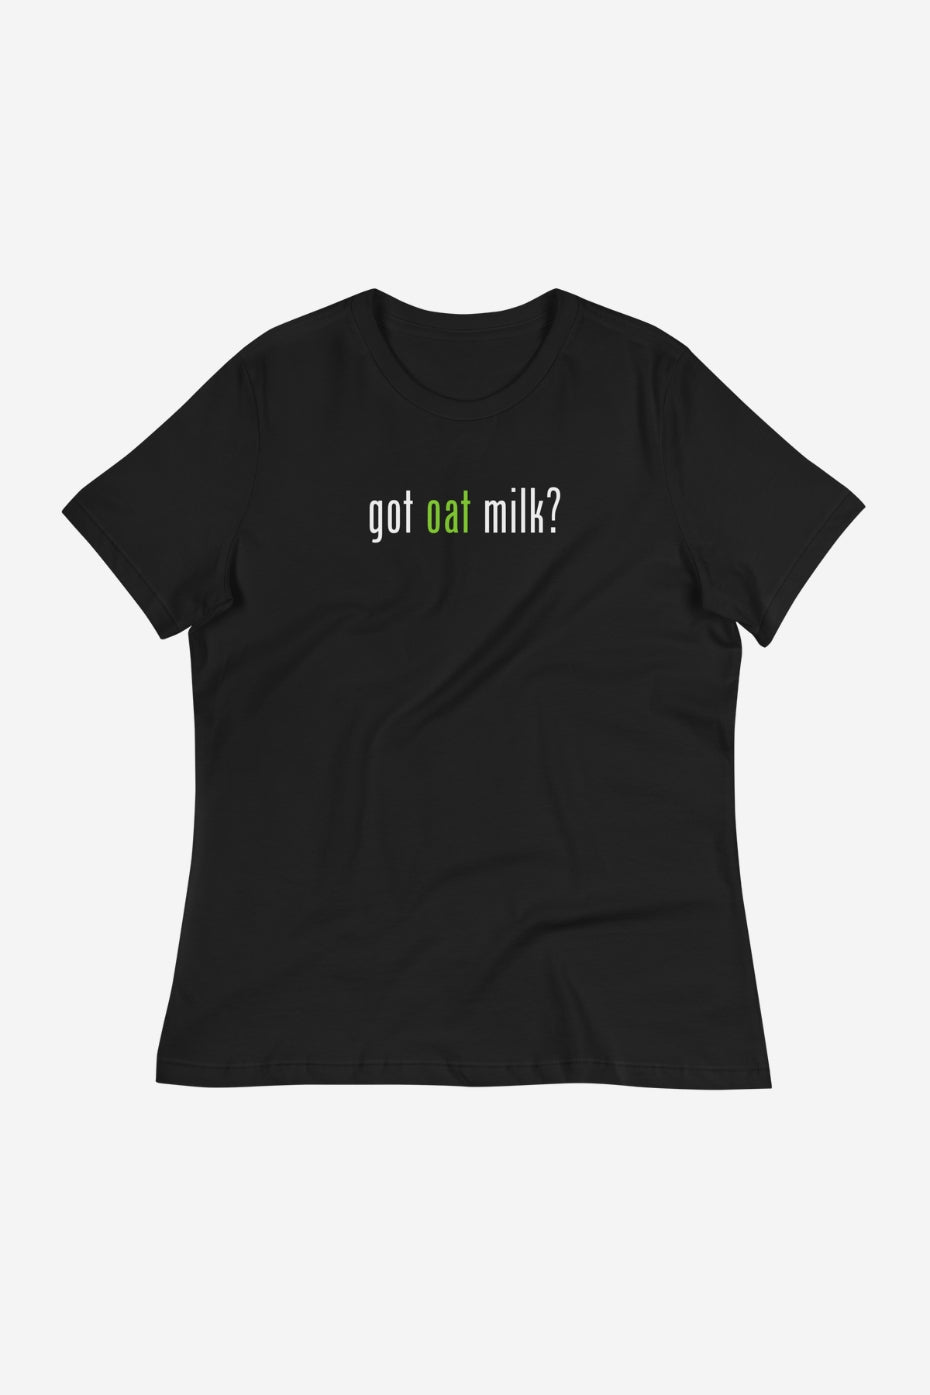 Got Oat Milk? Women's Relaxed T-Shirt